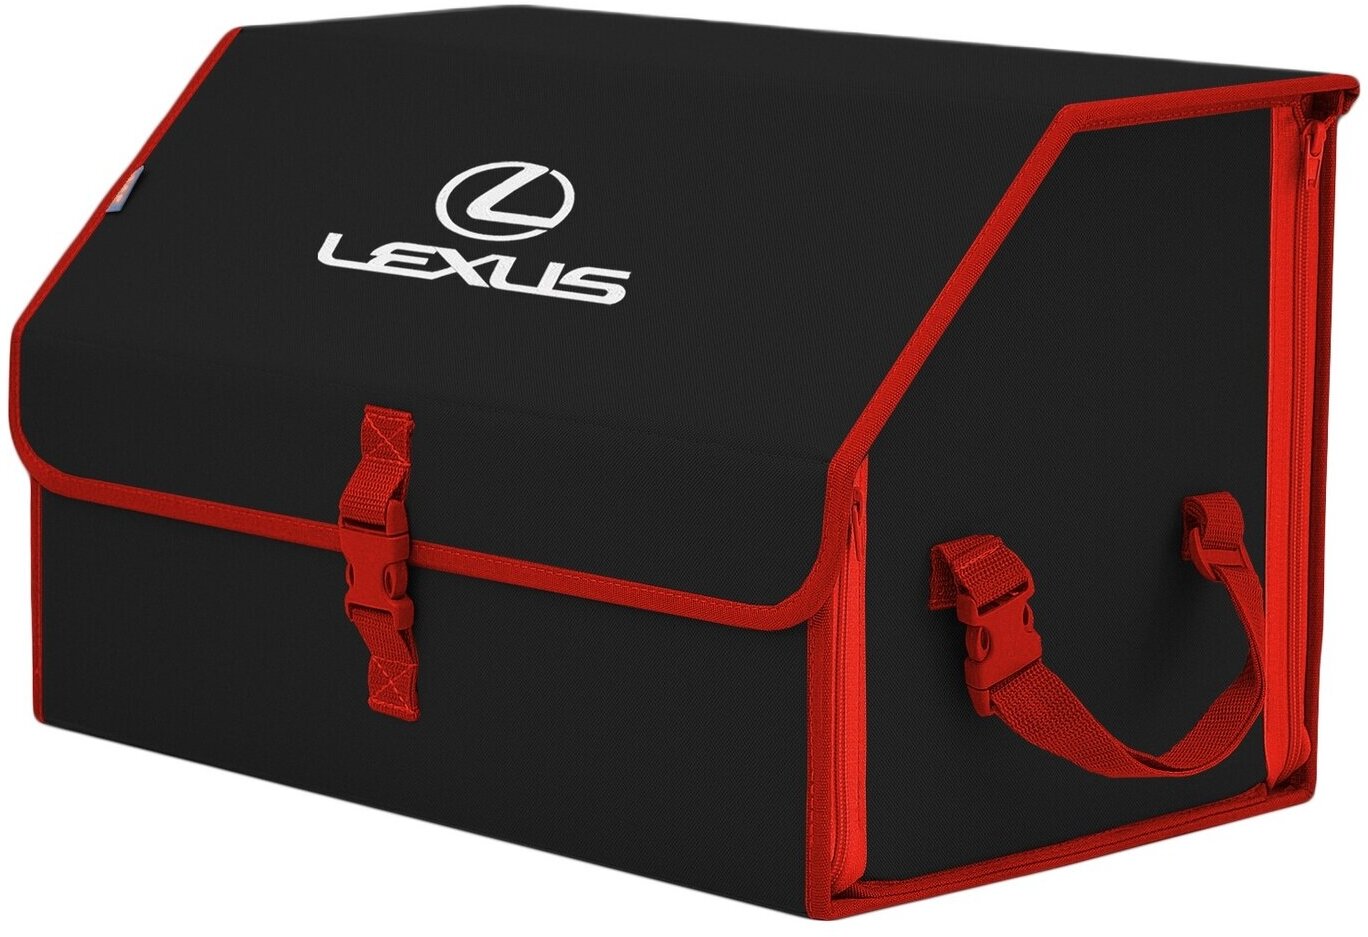 Органайзер-саквояж в багажник "Союз" (размер L). Цвет: черный с красной окантовкой и вышивкой Lexus (Лексус).